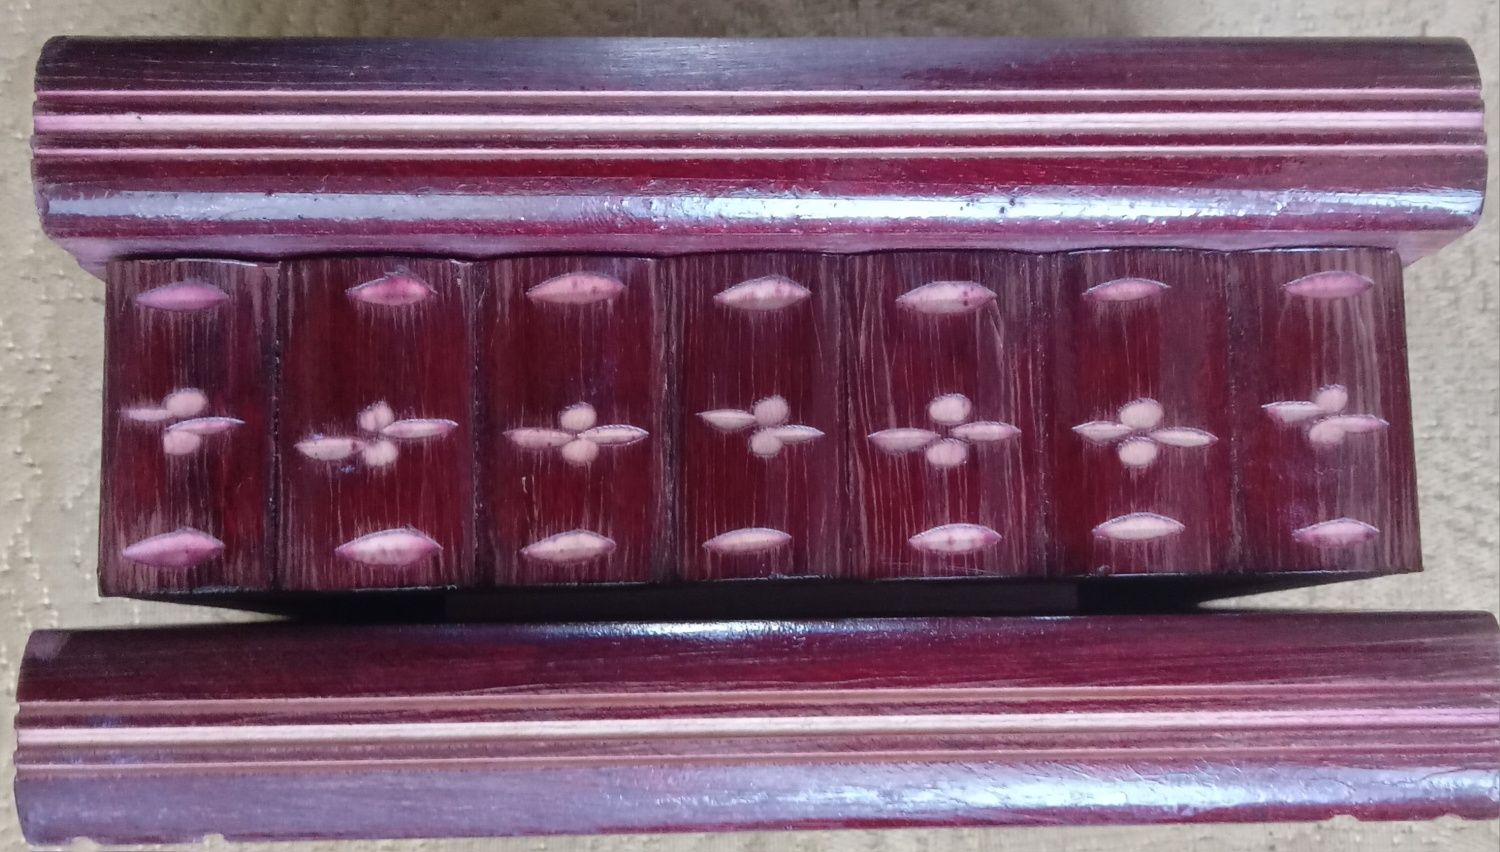 Frumoasa cutie vintage din lemn.